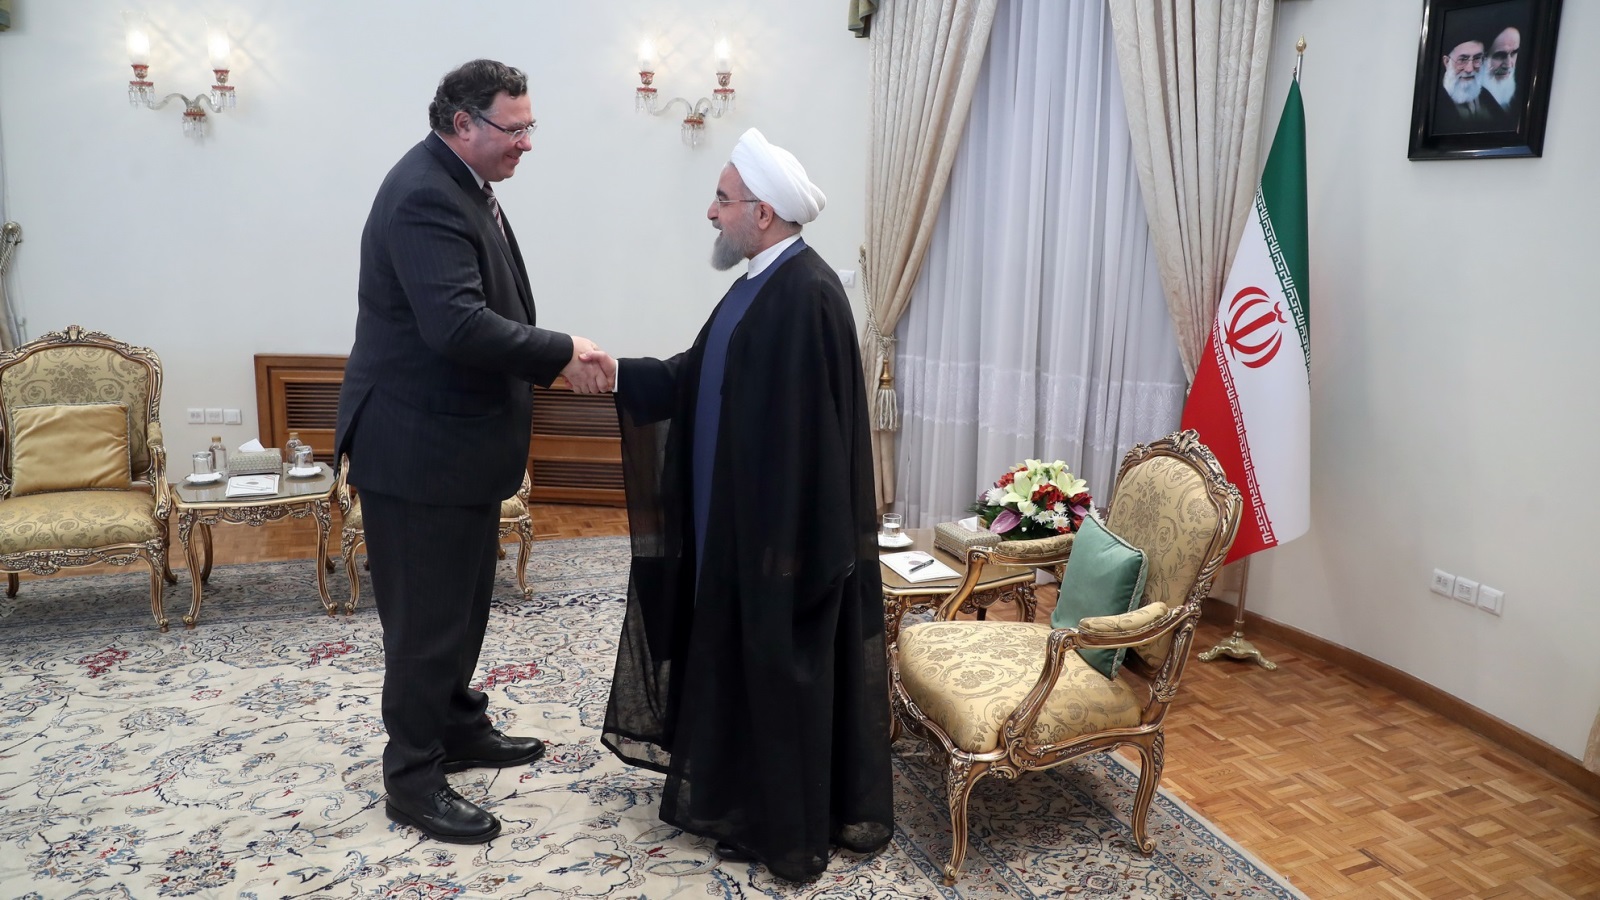  حسن روحاني مع رئيس شركة توتال؛ باتريك بويان، في مكتب الرئاسة في طهران (الأوروبية)